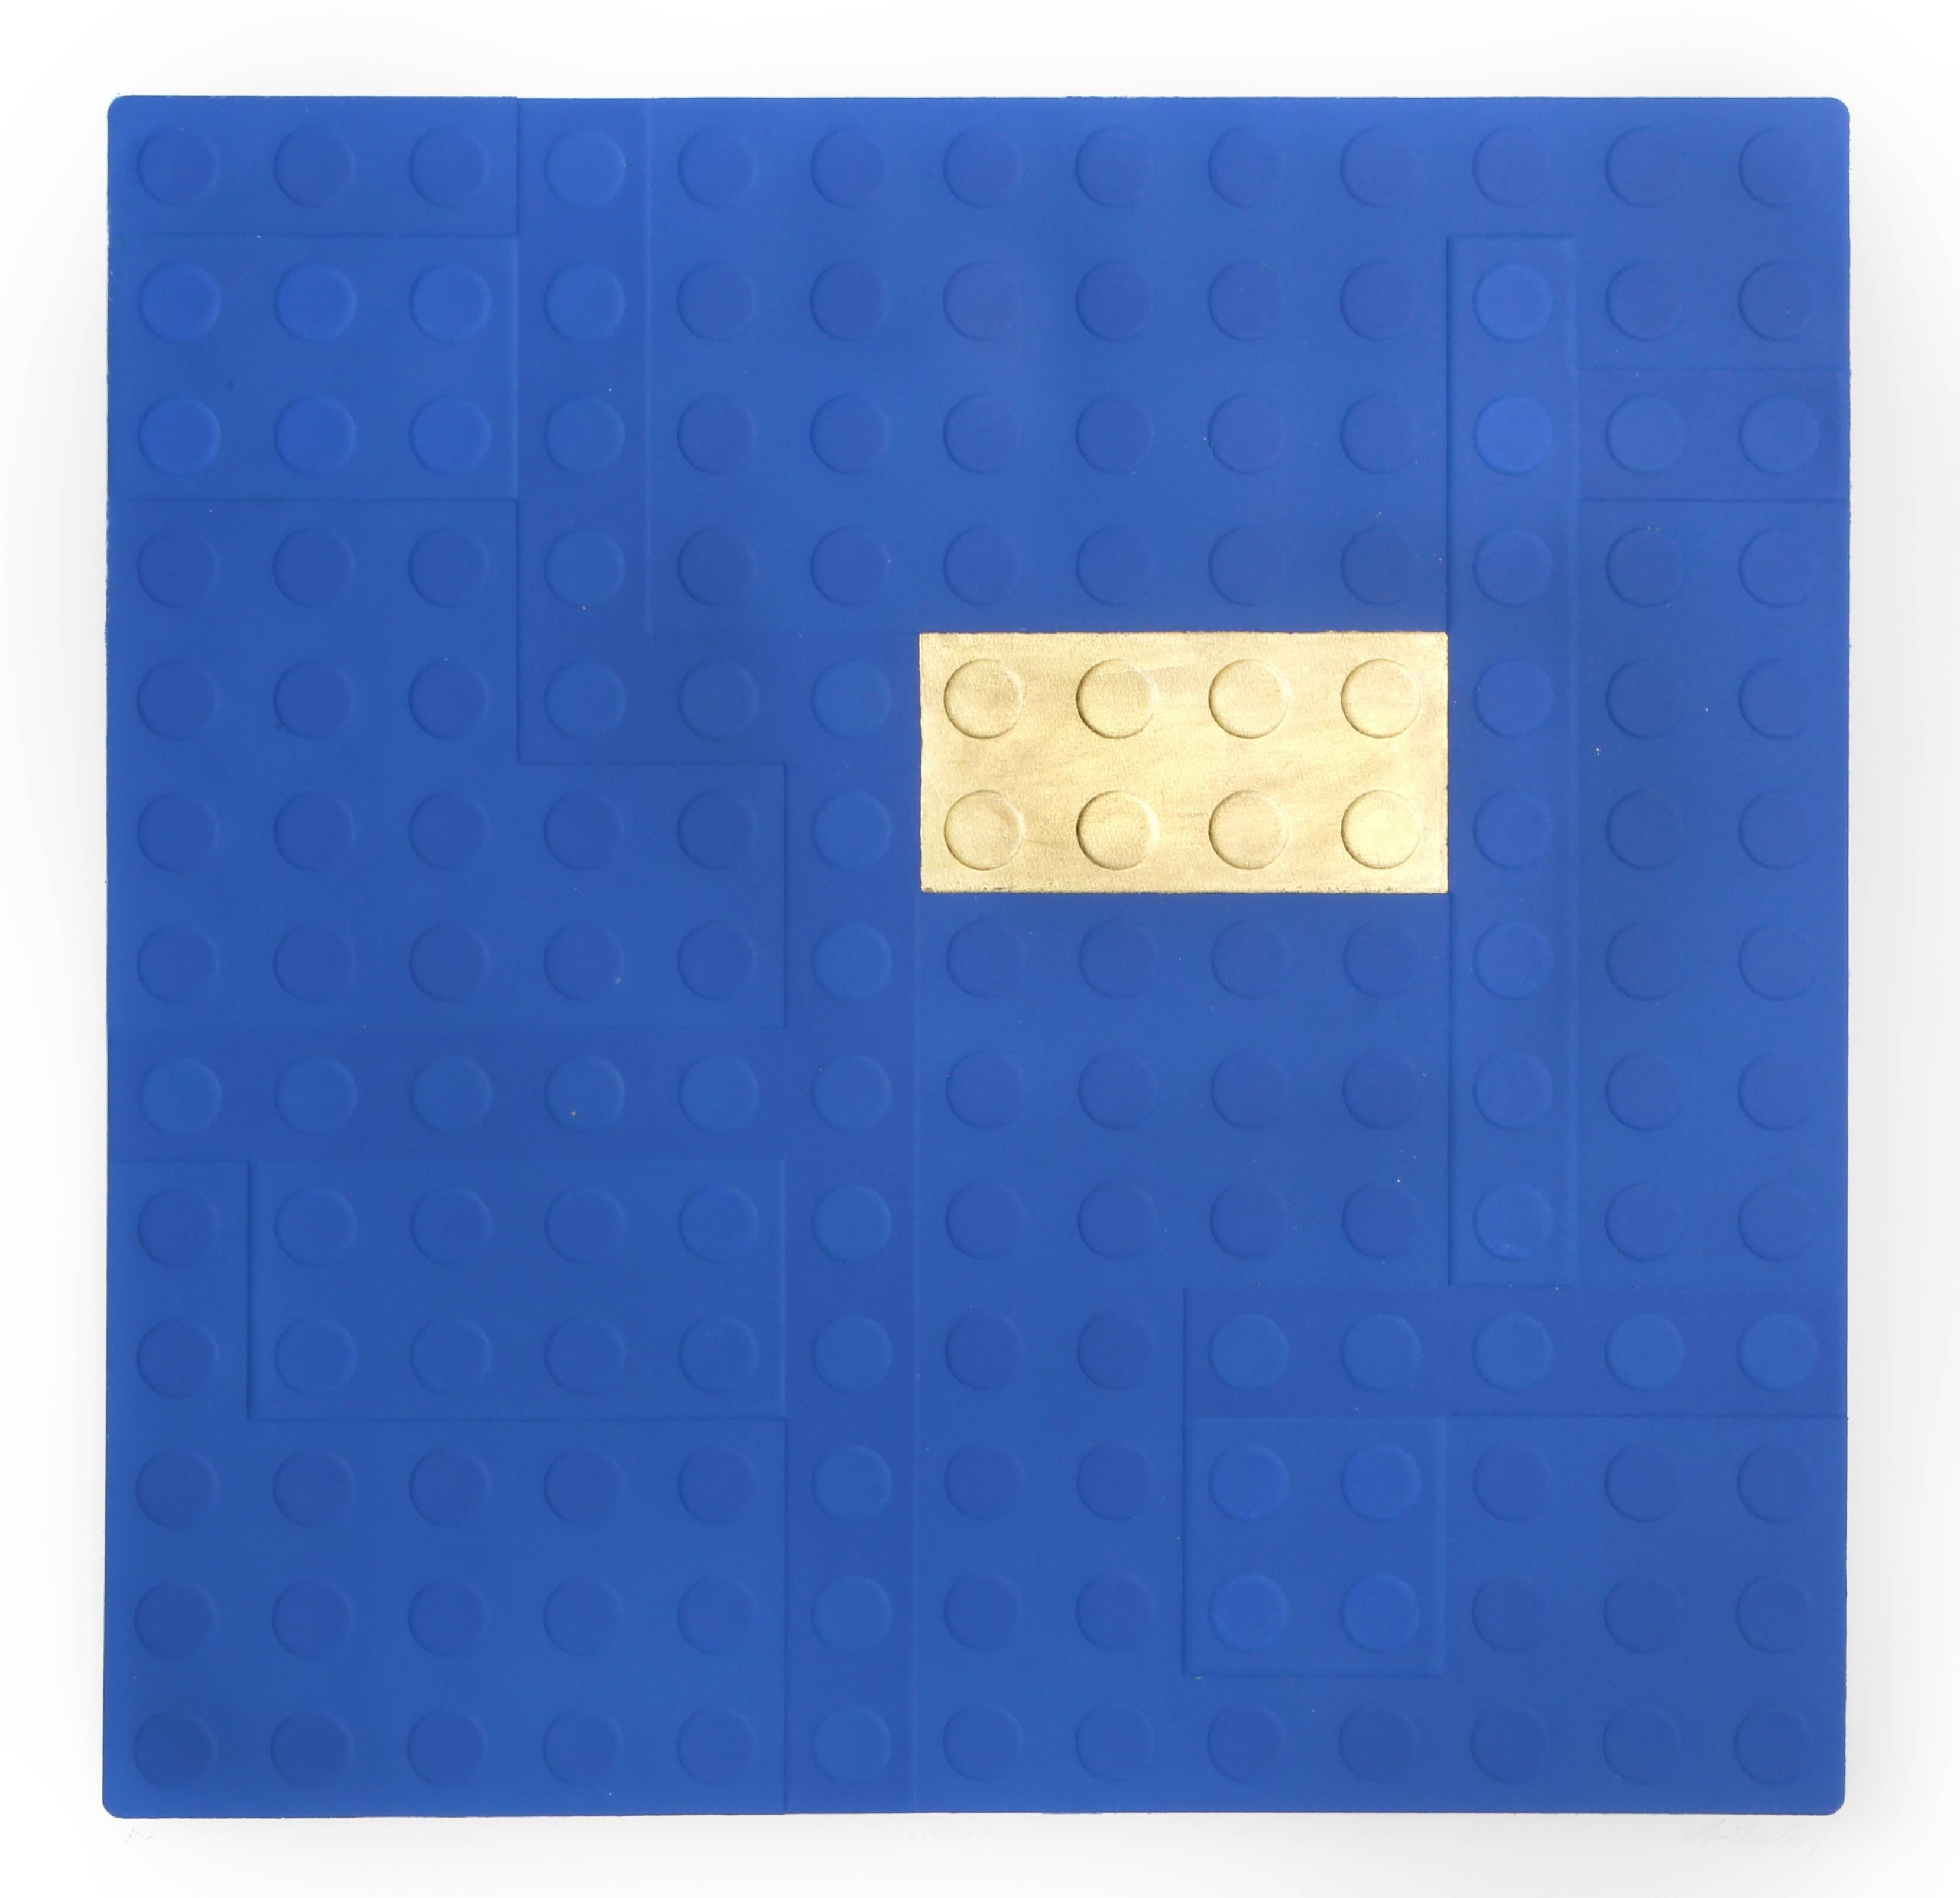 Lego (Blau), Aquatinta-Radierung mit Blattgold-Radierung von Matteo Negri